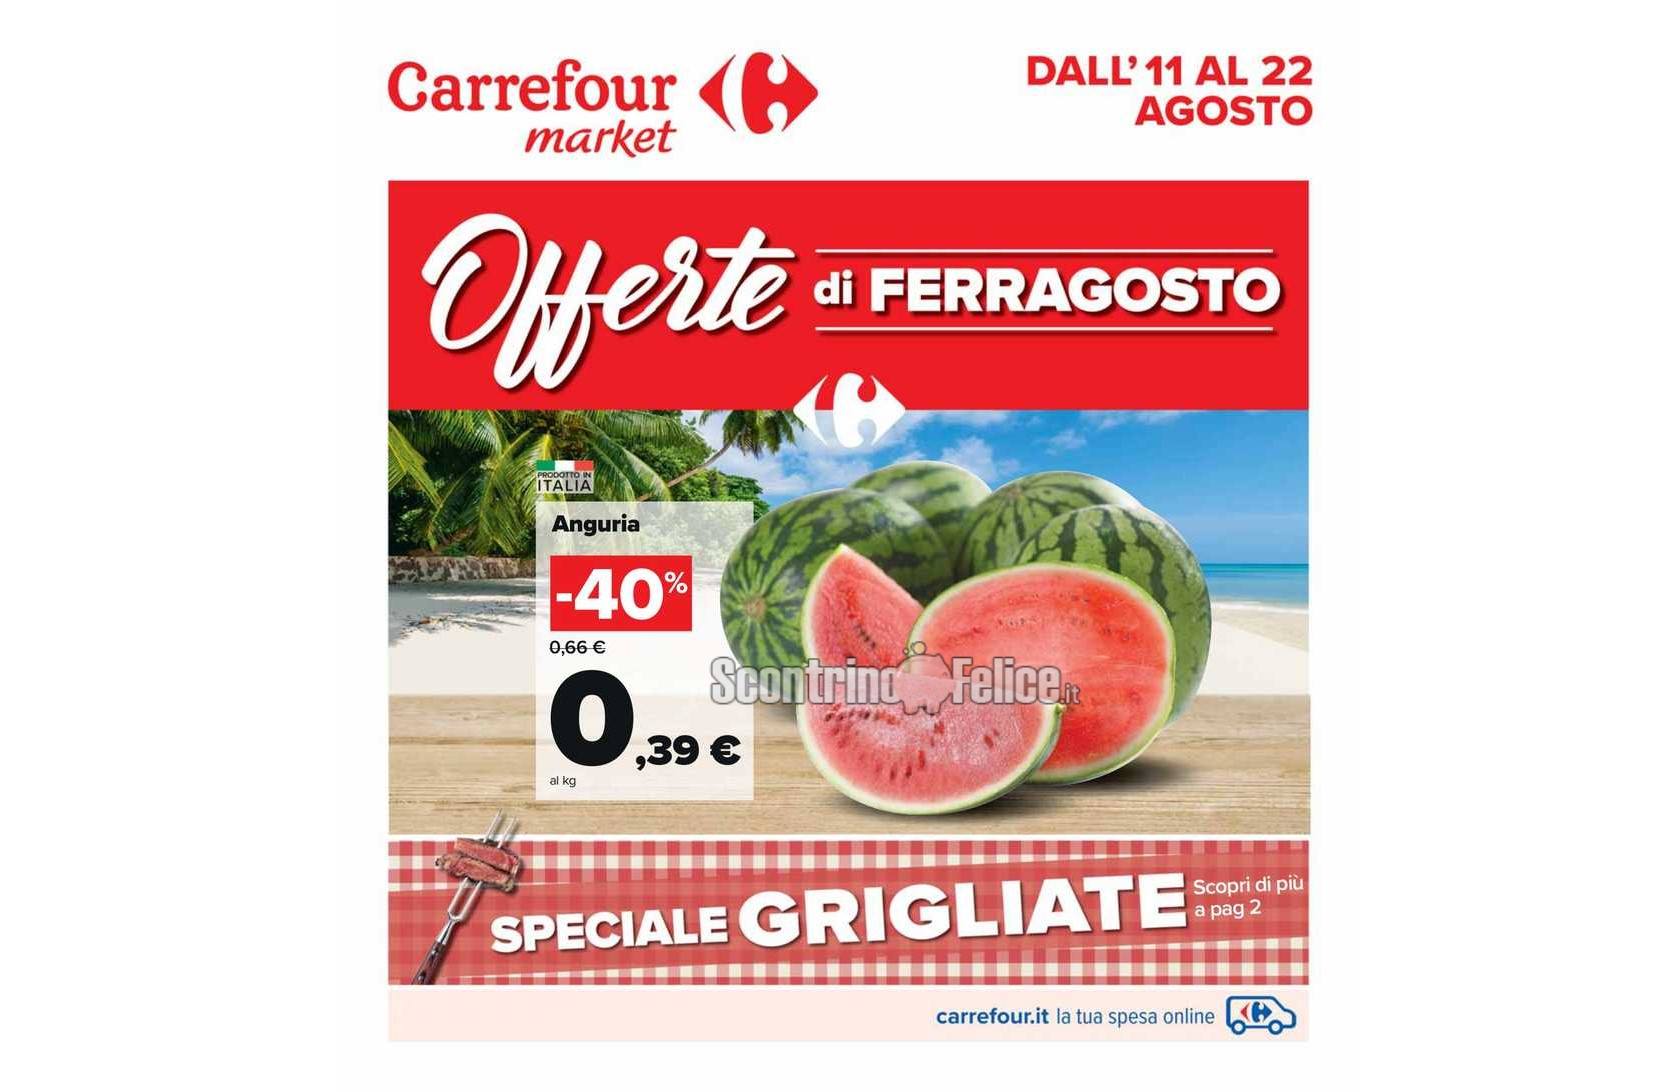 [Anteprima] Nuovo Volantino Carrefour Market valido dall’11 al 22 agosto 2022